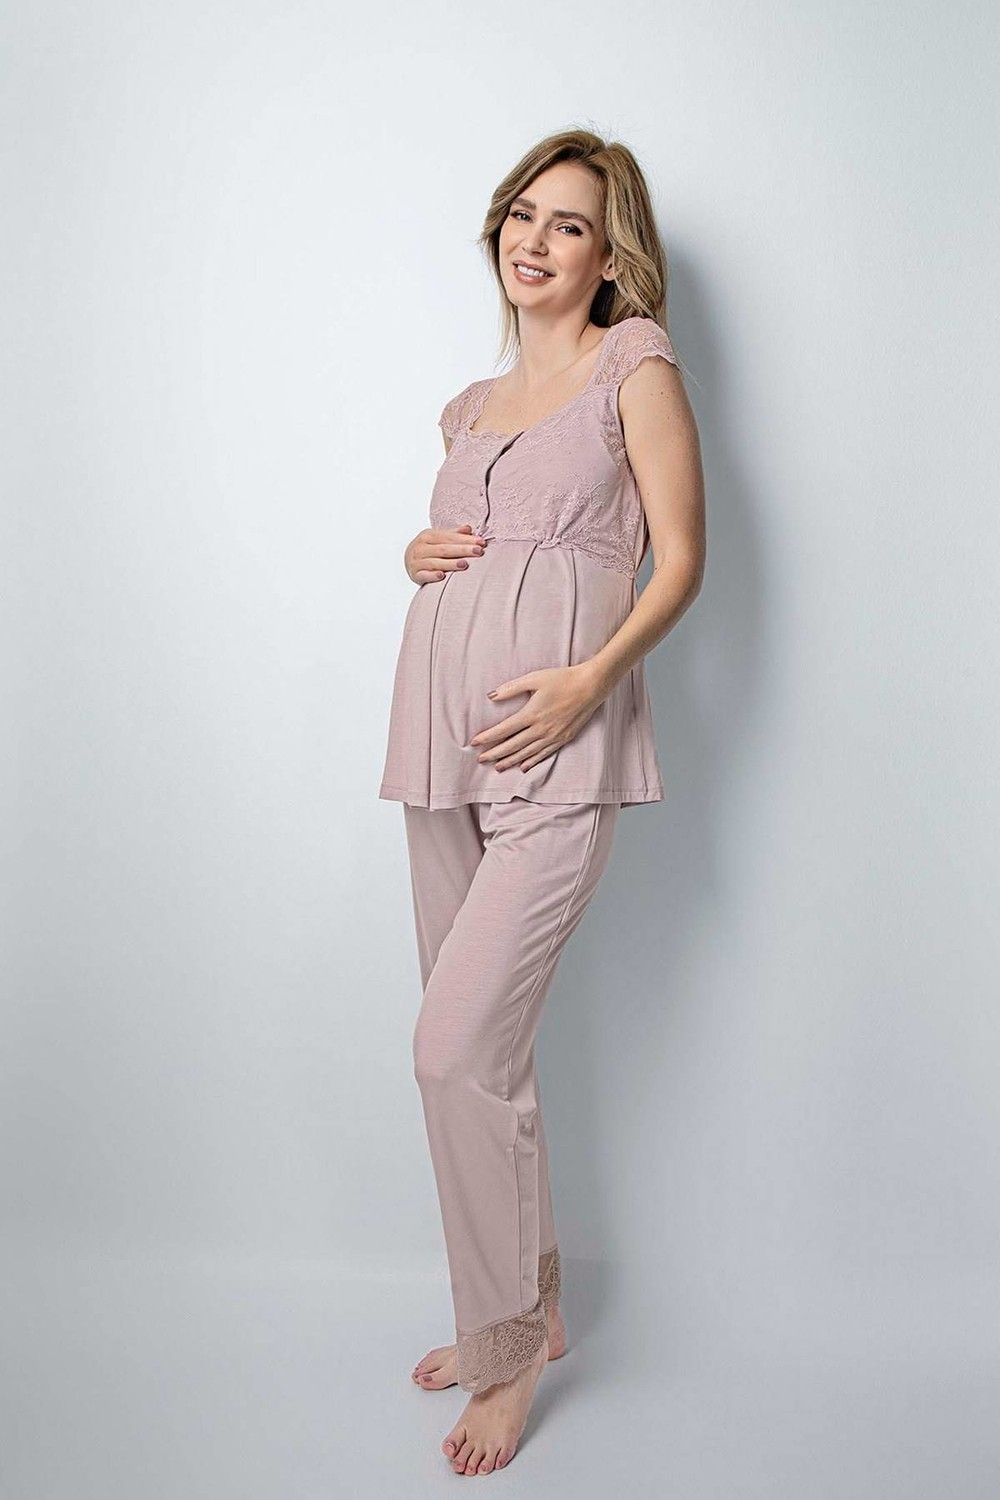 Пижамный комплект Monamise 18441 для беременных после родов - Норка